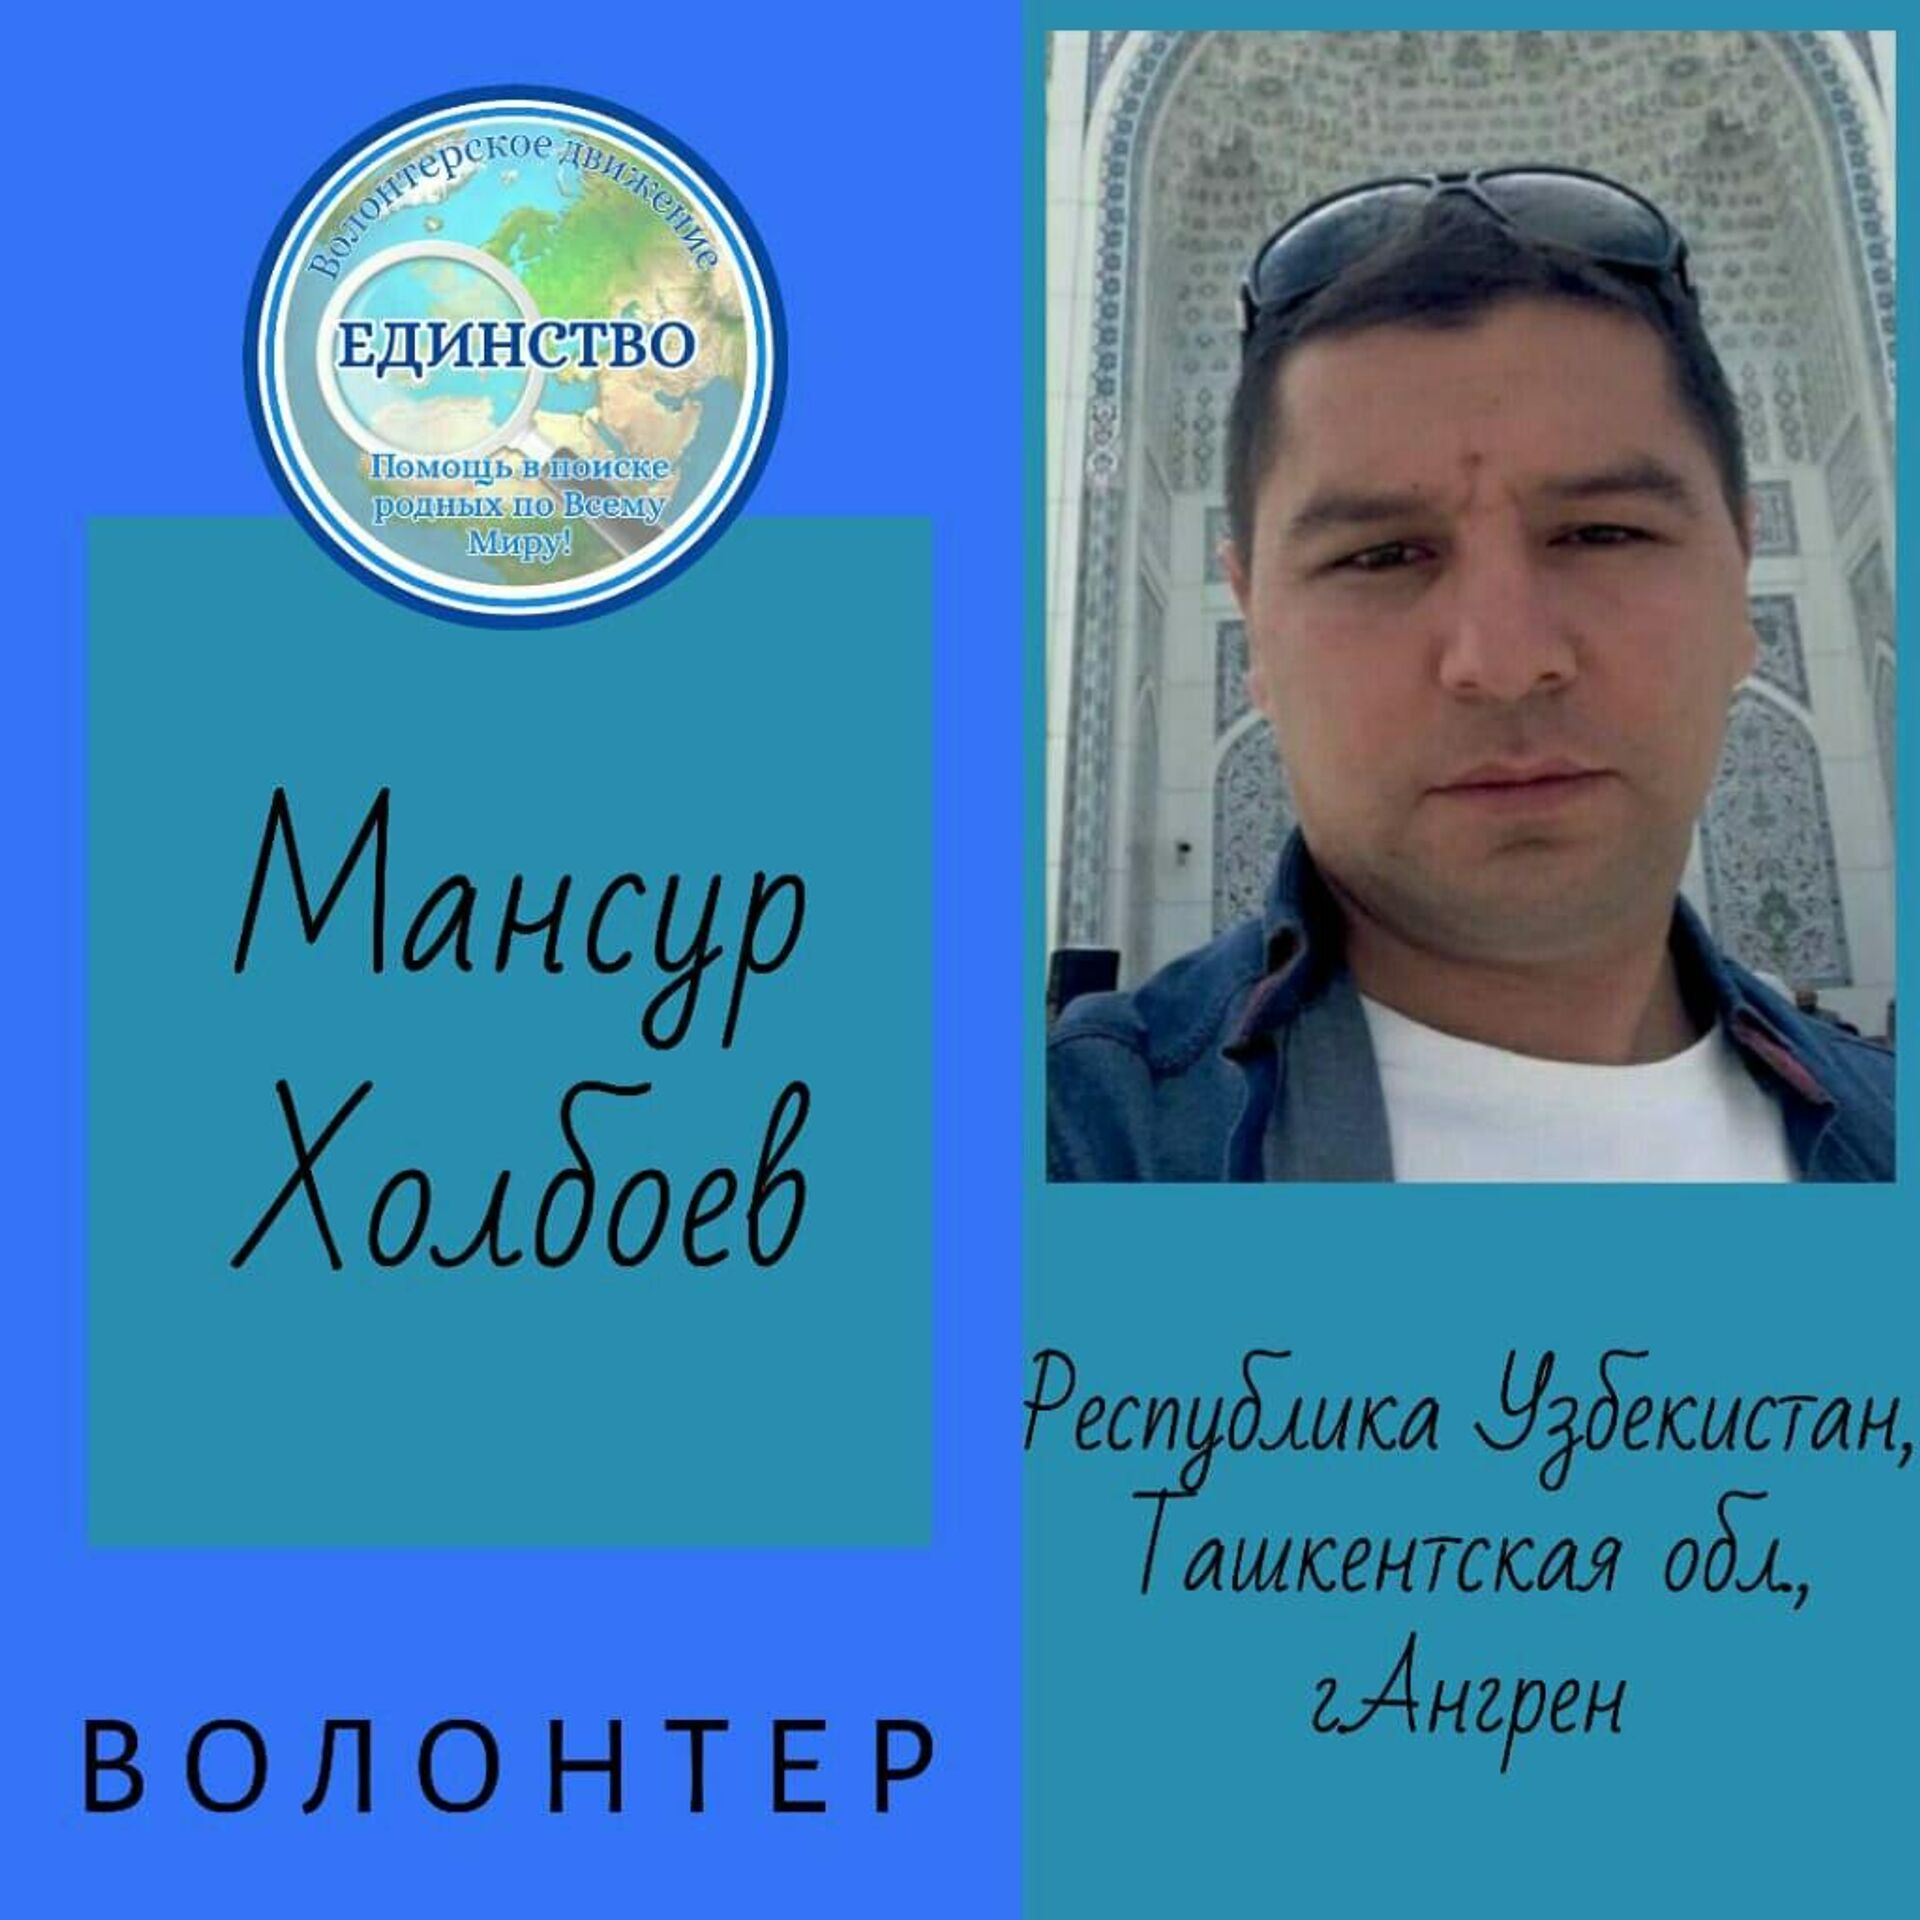 Волонтер Мансур Холбоев - Sputnik Узбекистан, 1920, 25.01.2022